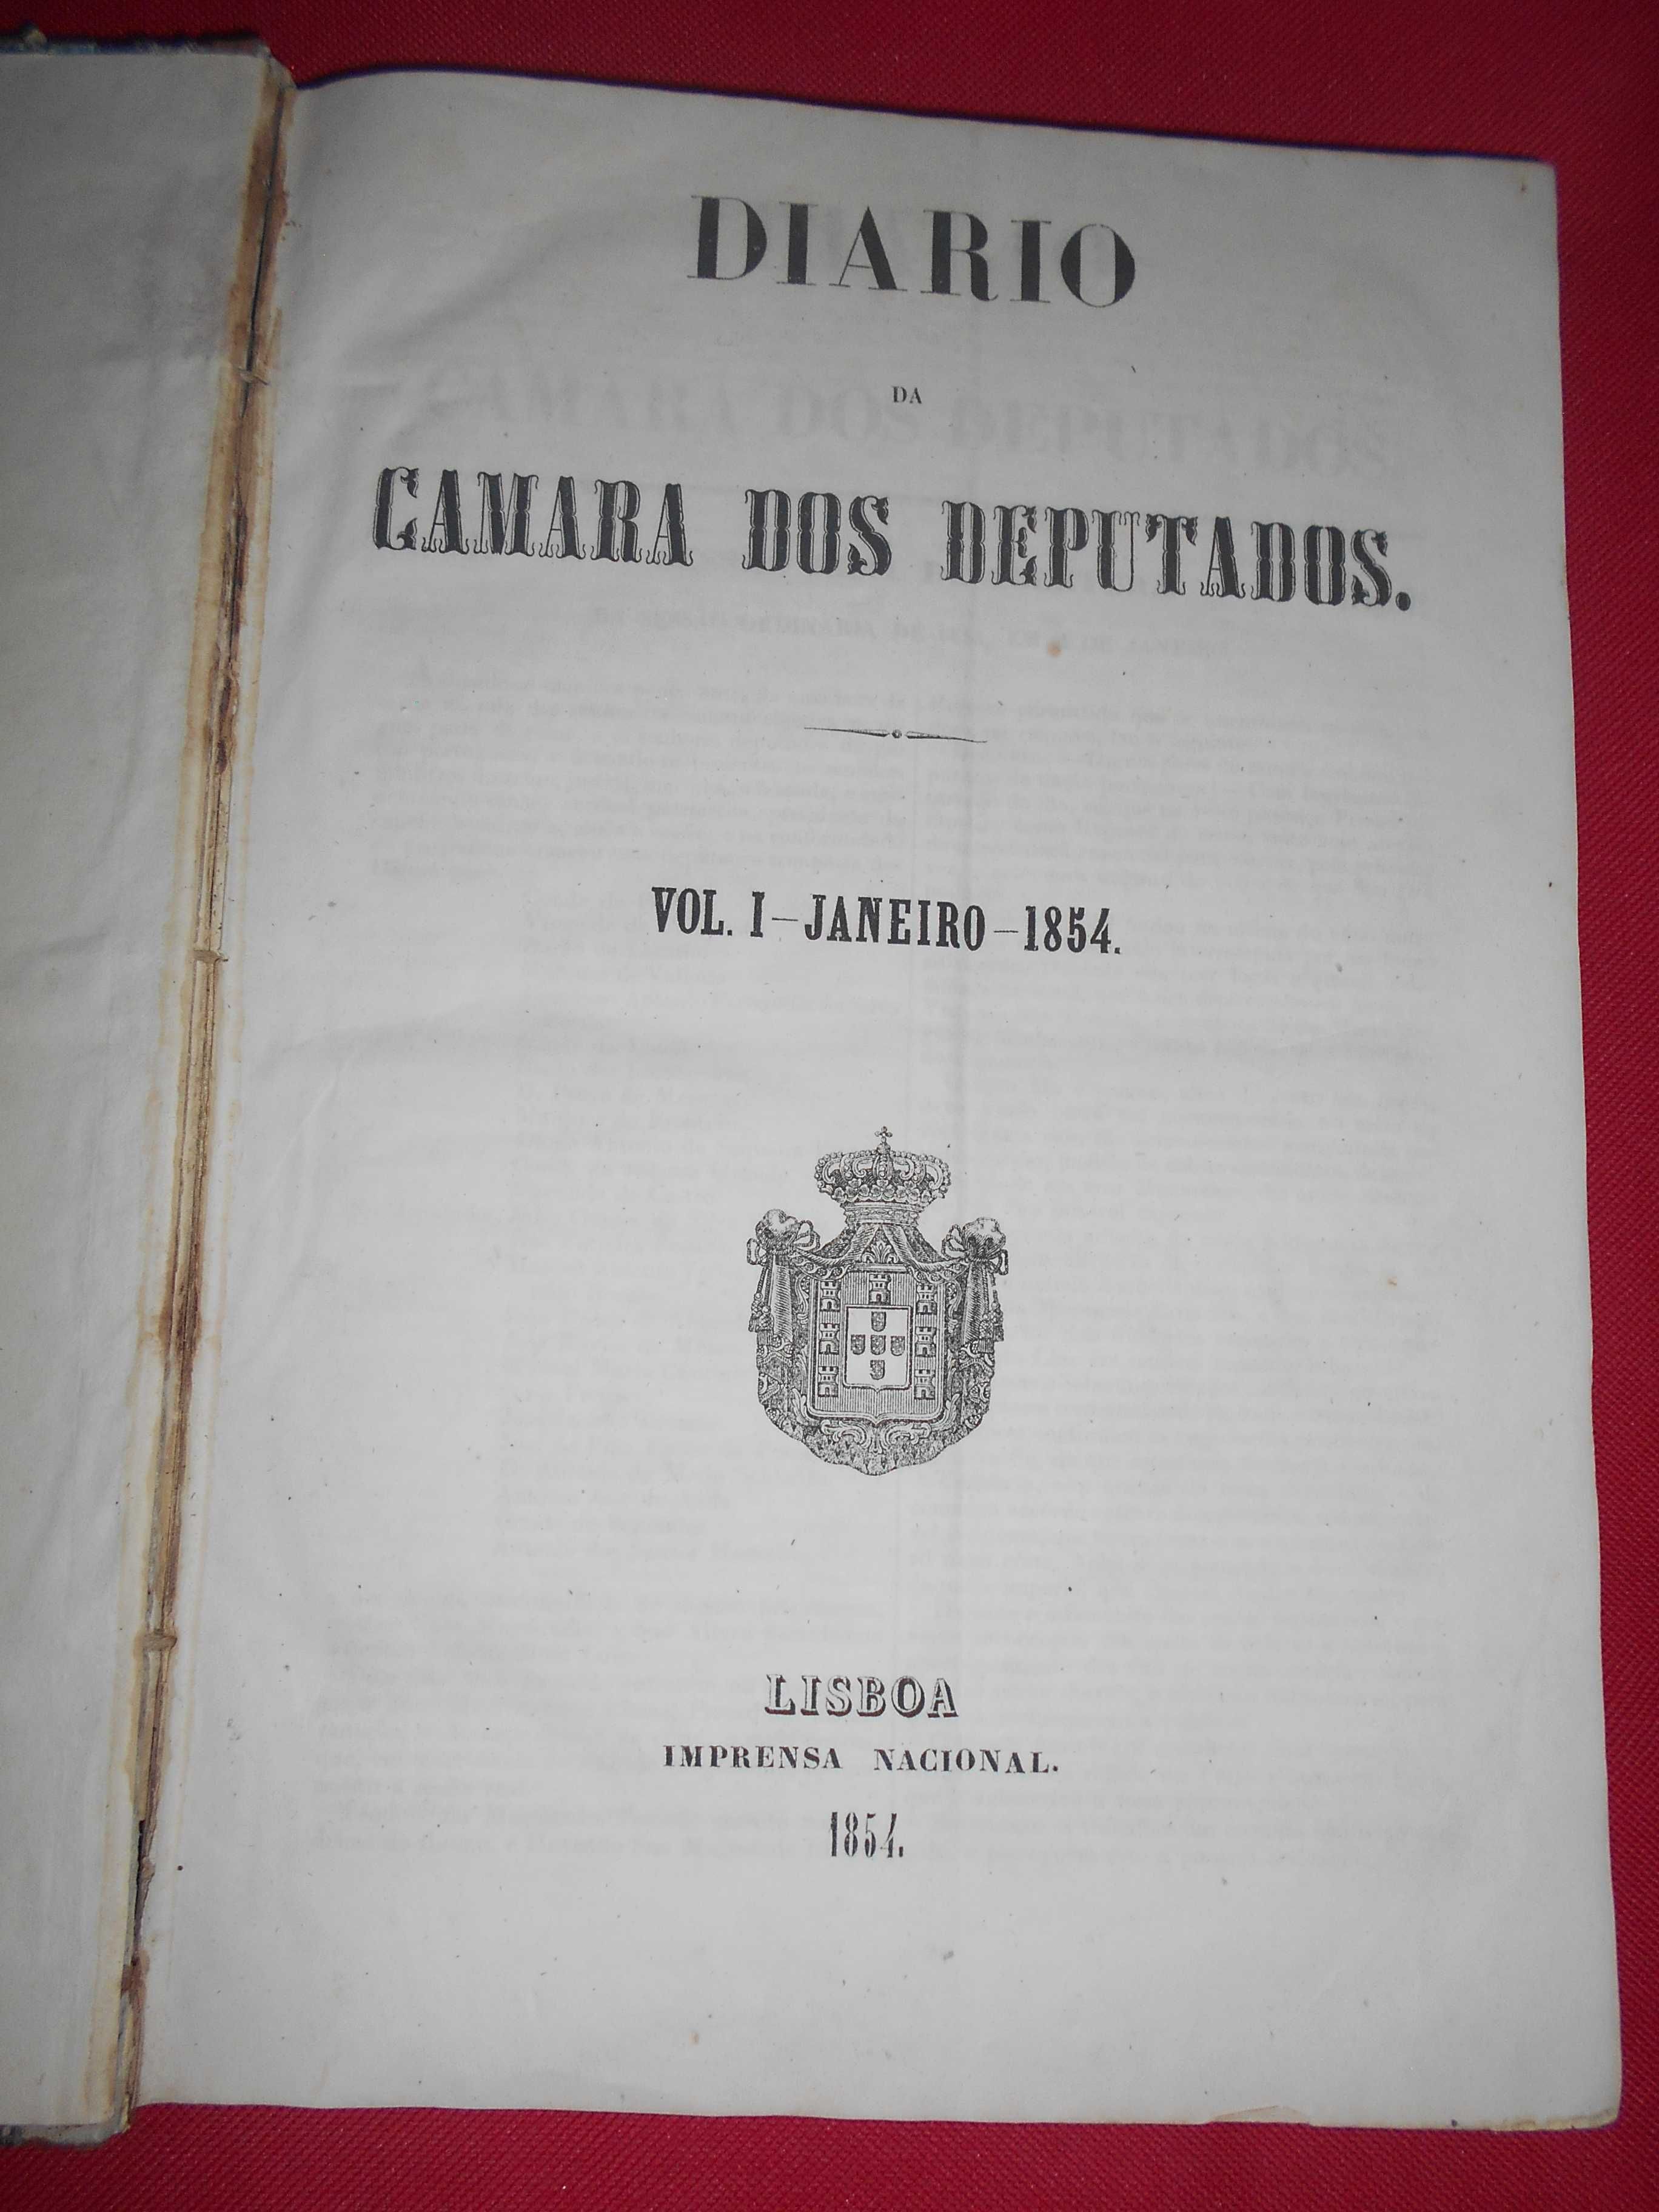 Diário da Câmara dos Deputados - Vol. I e II de 1854